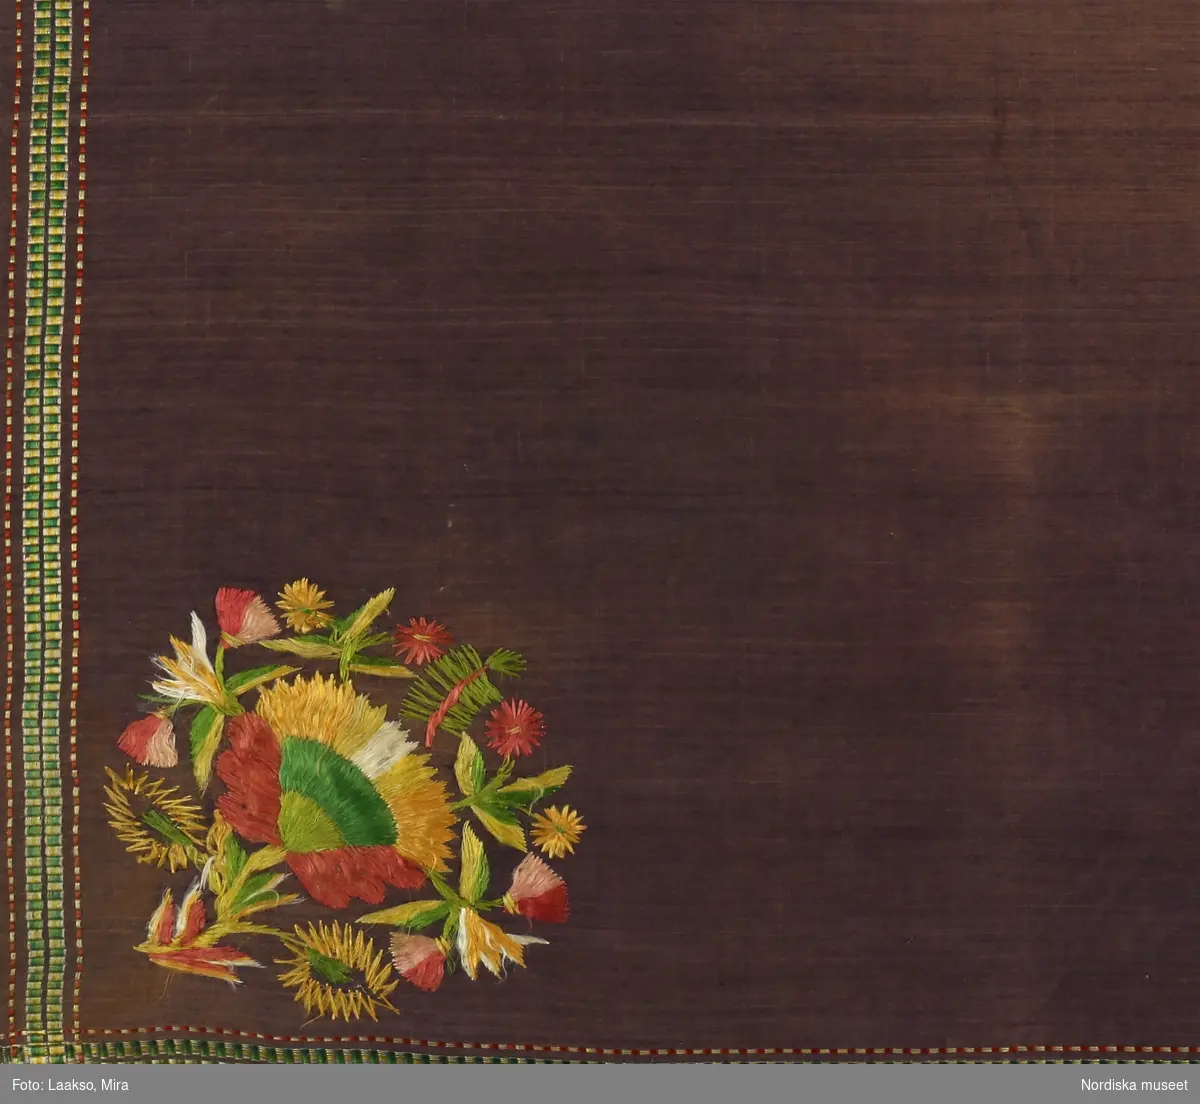 Kvadratiskt halskläde använt som bokkläde, av lila bomullslärft, enfärgat med en smal kantbård i rips med silke i gult, grönt och rött. . I ena hörnet  blommotiv broderat med otvinnat silke i rött, gult, grönt i plattsöm. Fint sydda smala fållar.
Anm. Ojämnt blekt.
Tillhör en grupp av likartade som även vävdes i siden från tidigt 1800-tal. Vanliga i södra Sverige och i Danmark. Finns även i t.ex. Härjedalen se inv.nr 103578 och från Medelpad  198.494.
/Berit Eldvik 2012-01-10